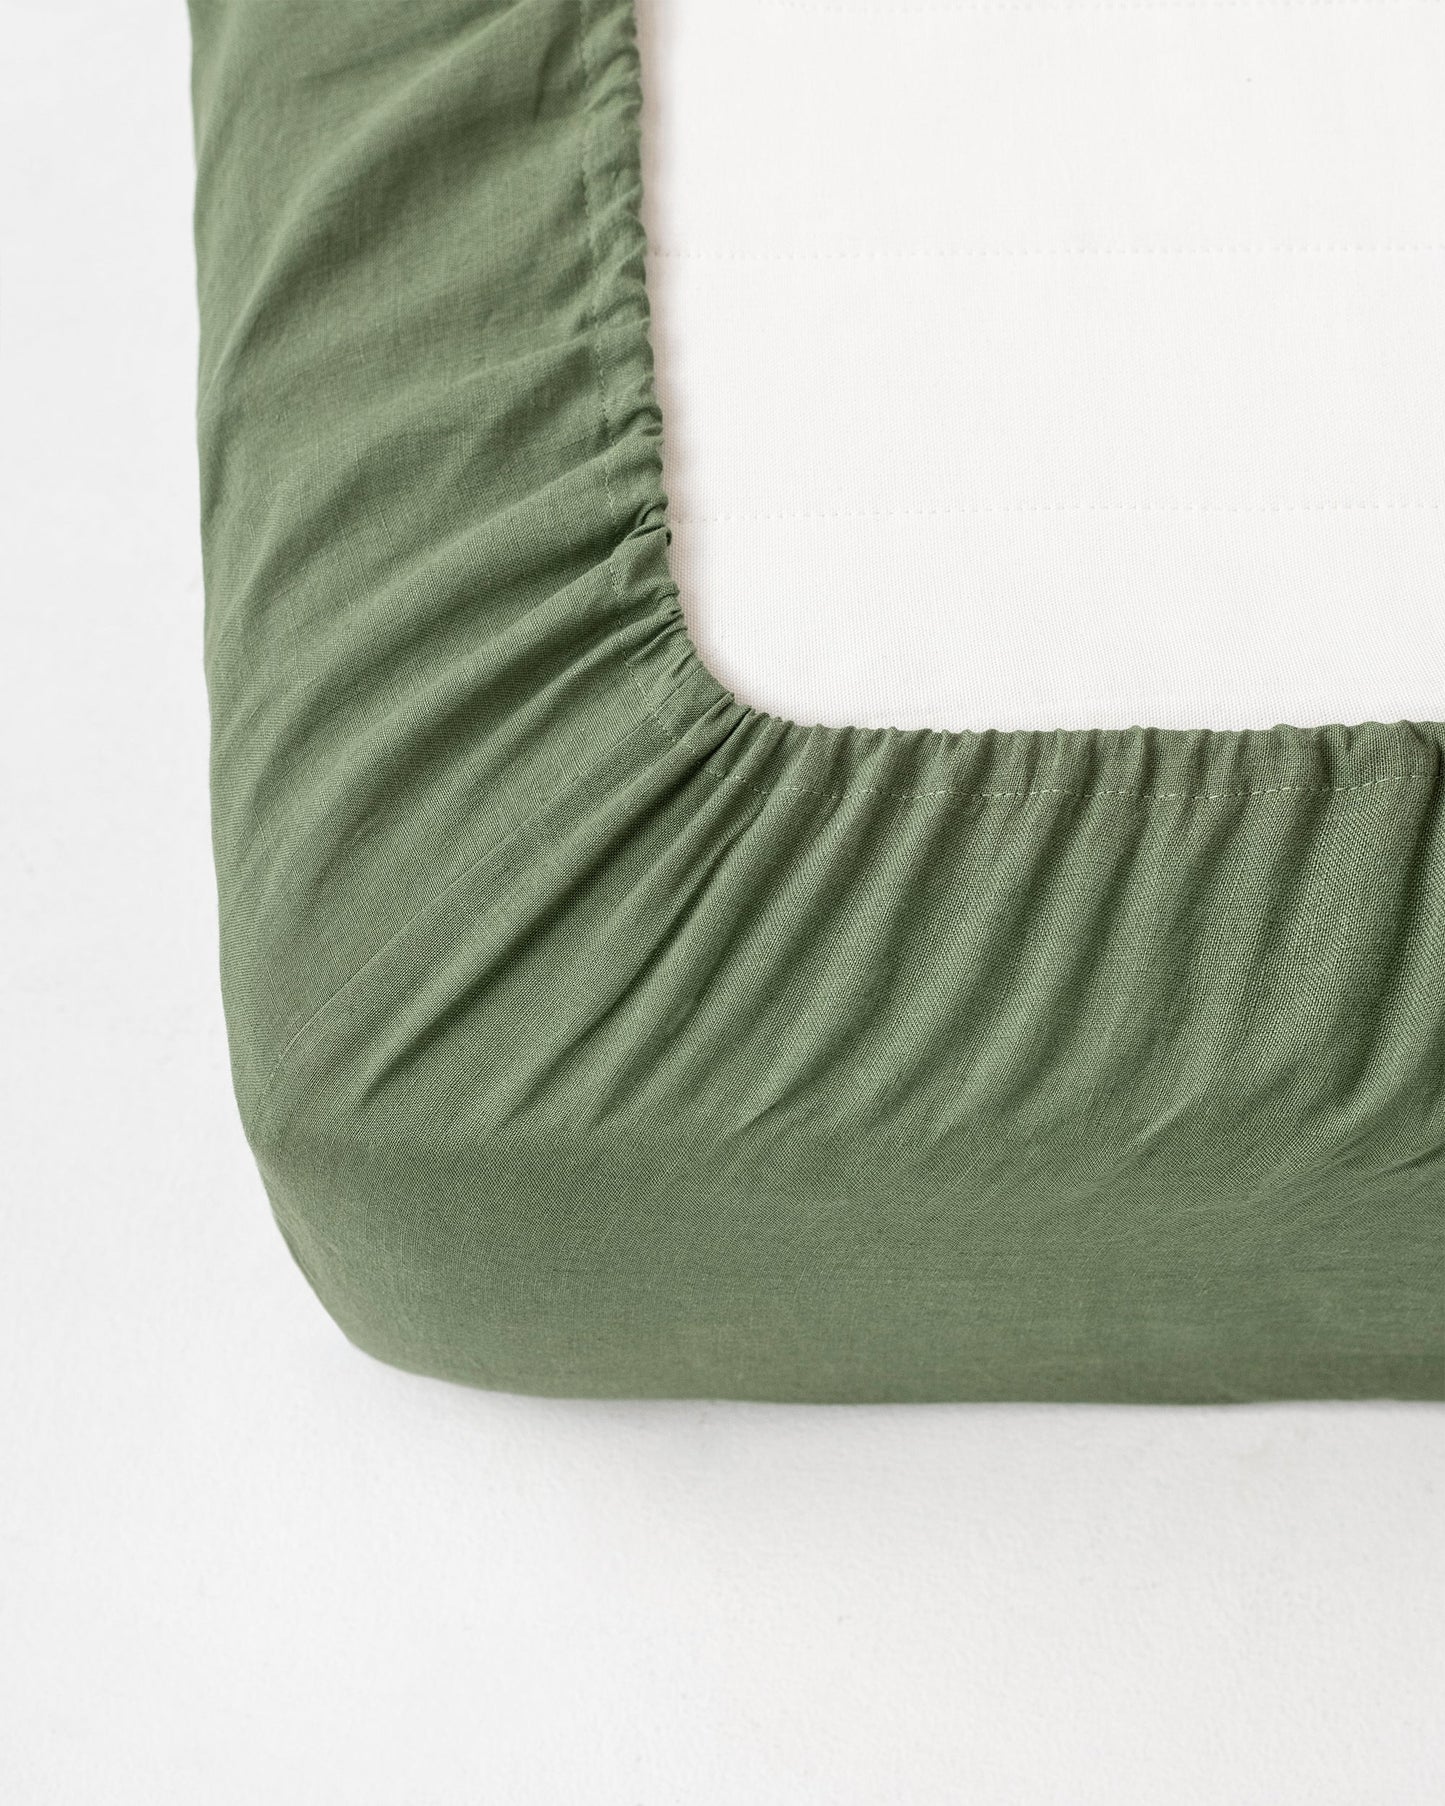 Forest green linen fitted sheet - MagicLinen